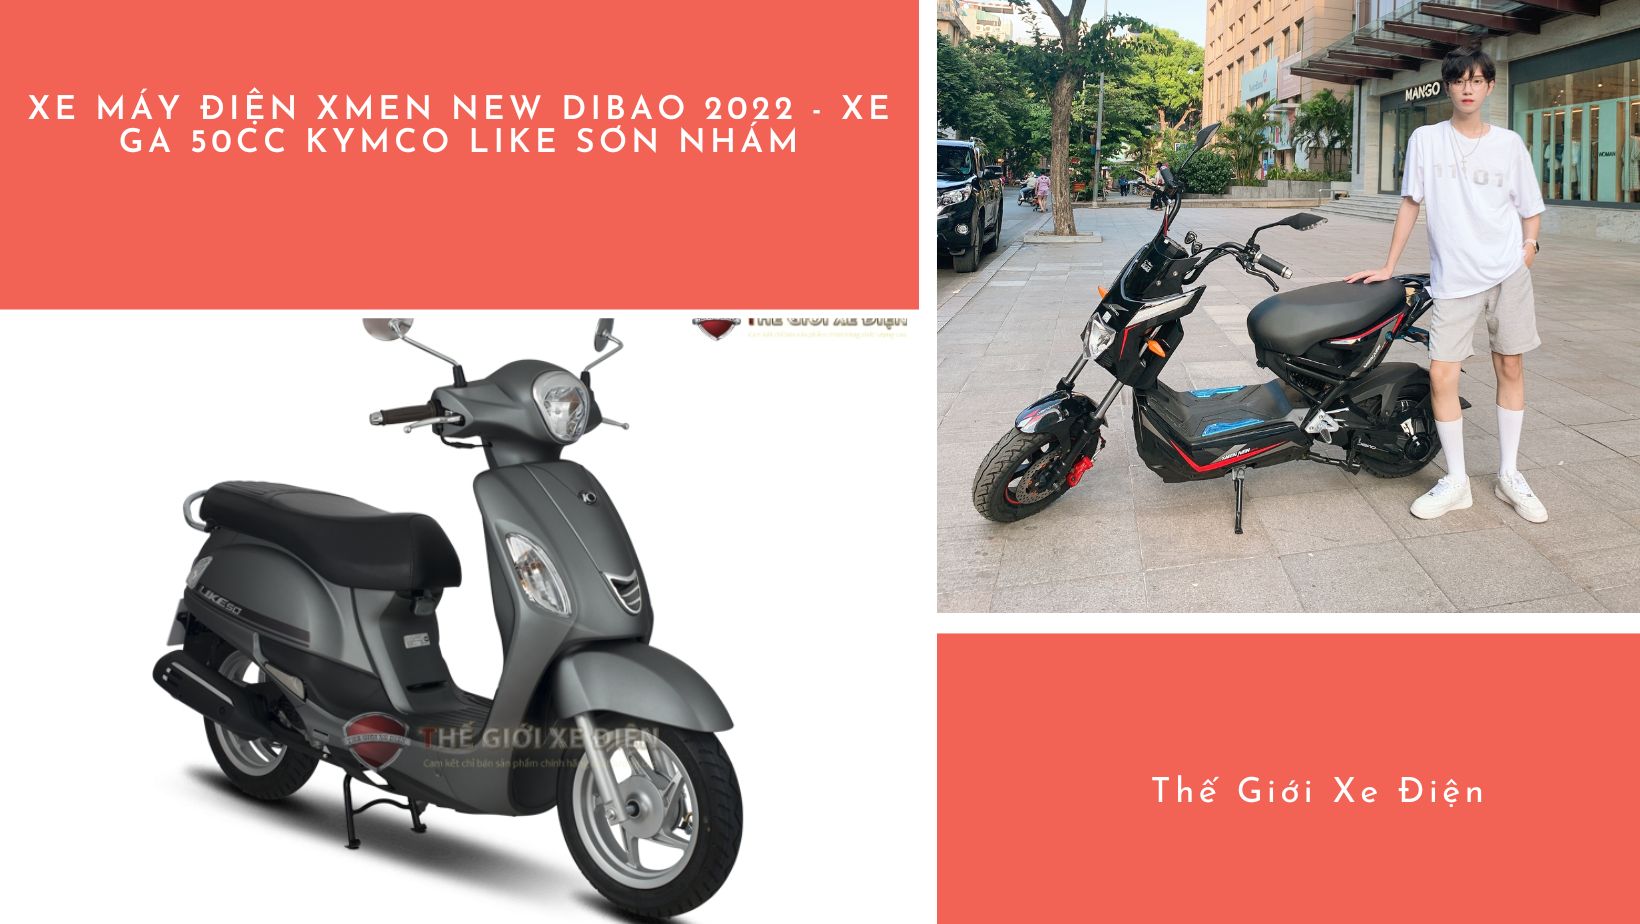 Tuổi trẻ xông pha cùng: Xe máy điện Xmen New Dibao 2023 - Xe ga 50cc KYMCO  Like sơn nhám